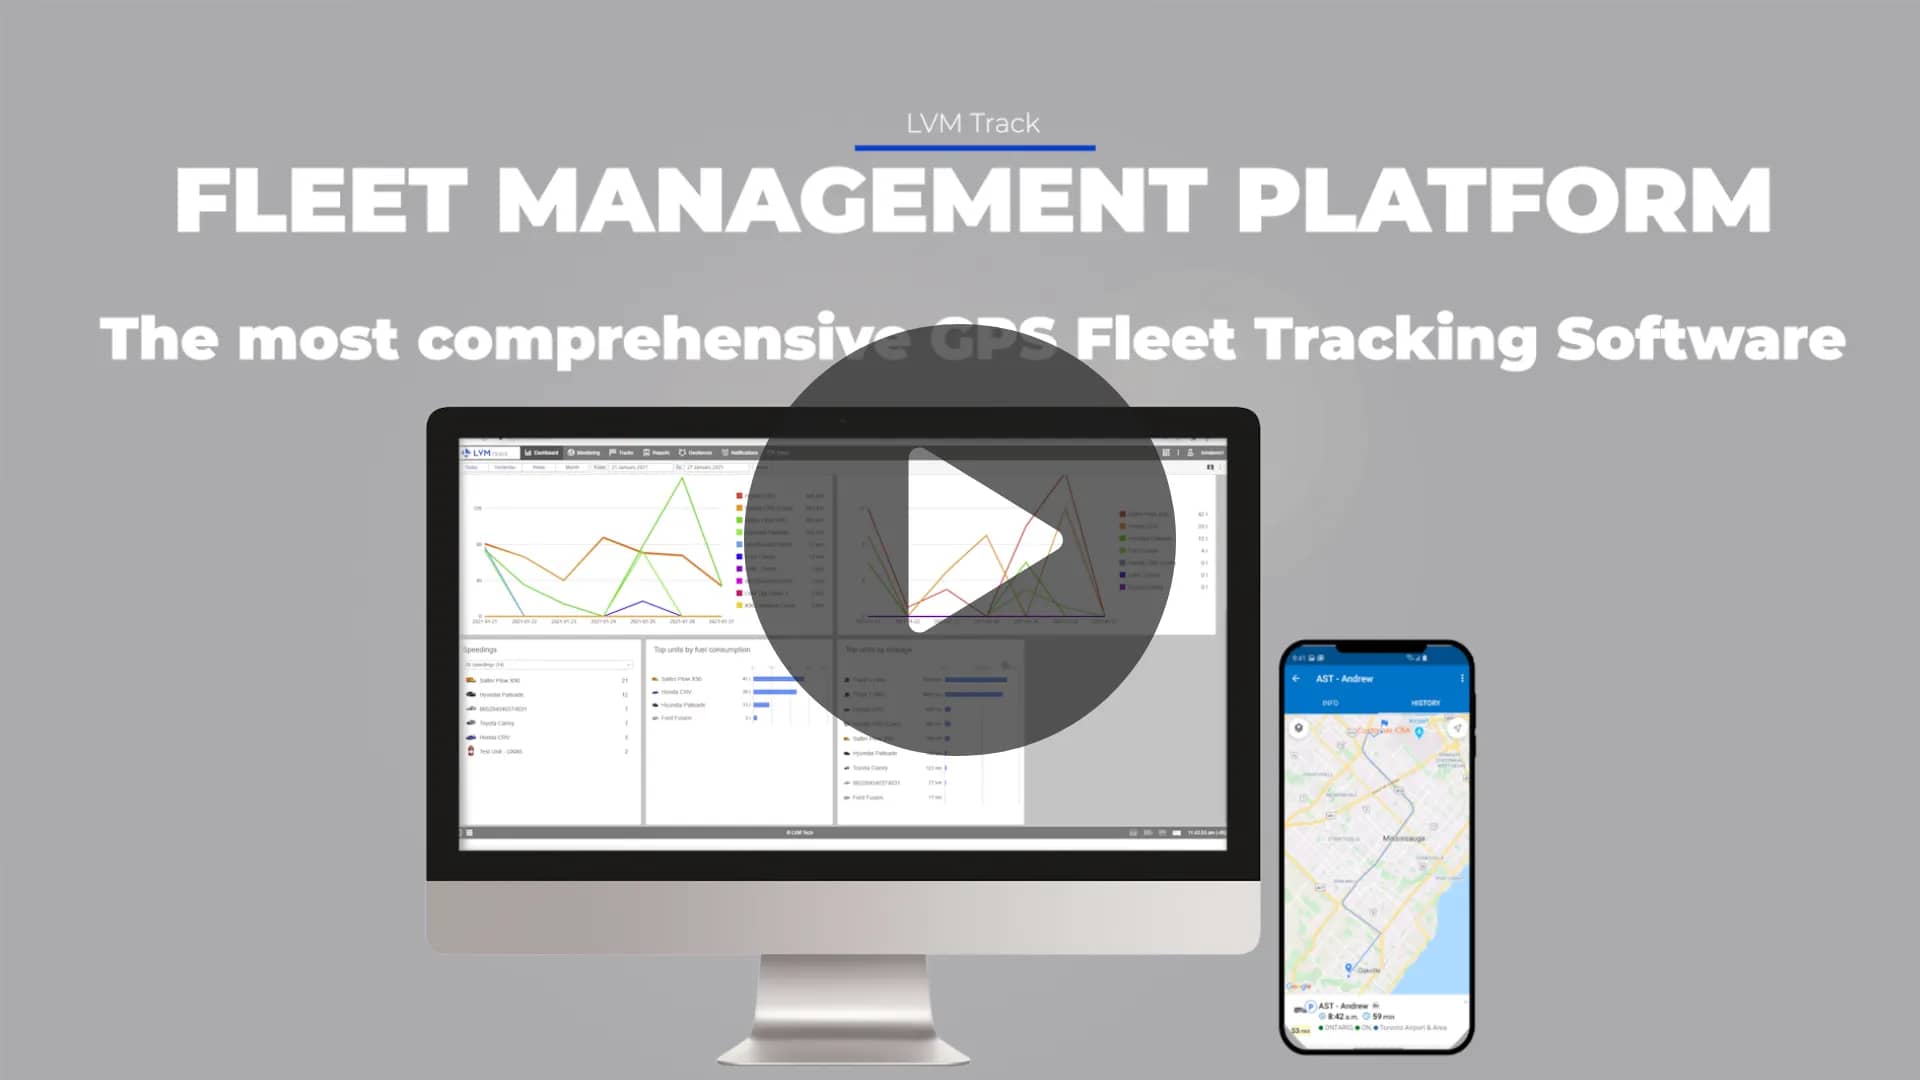 LVM Track fleet management software